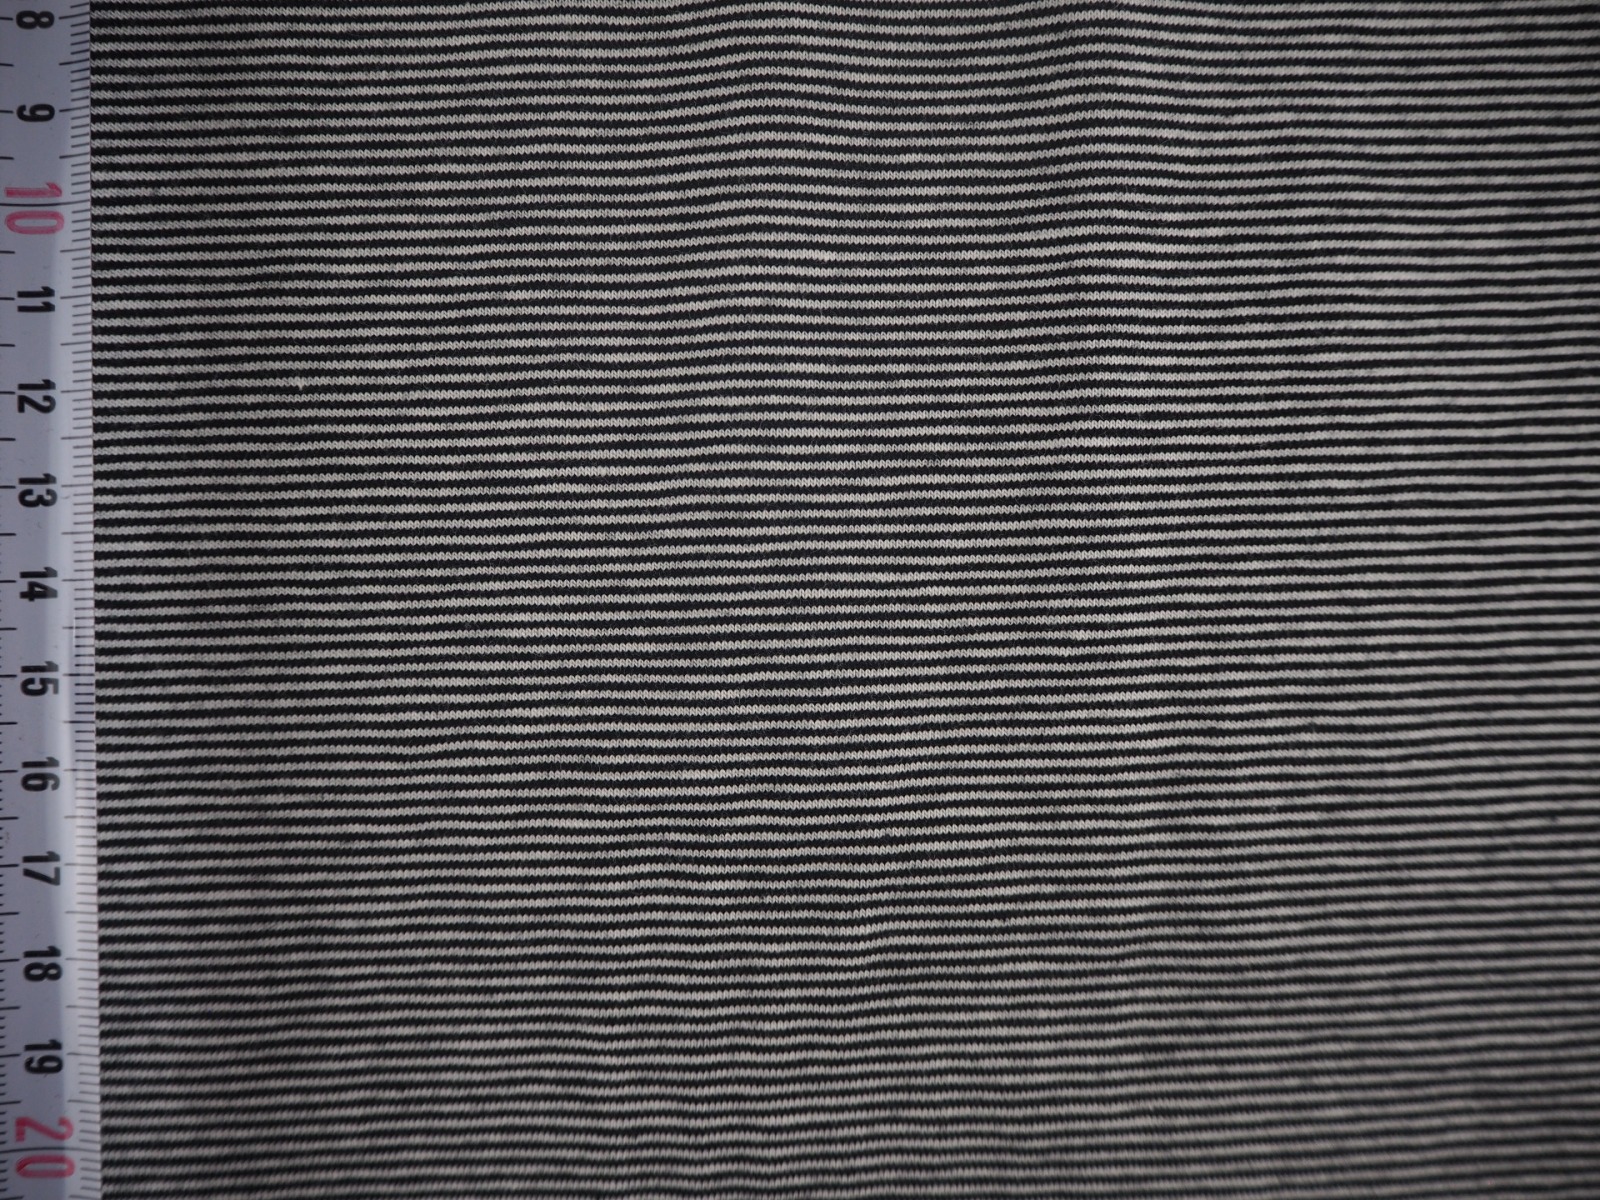 Jersey 1440 EUR/m feine Ringel 1 mm schwarz weiß Baumwolljersey gestreift Ringeljersey Stoffe Meter